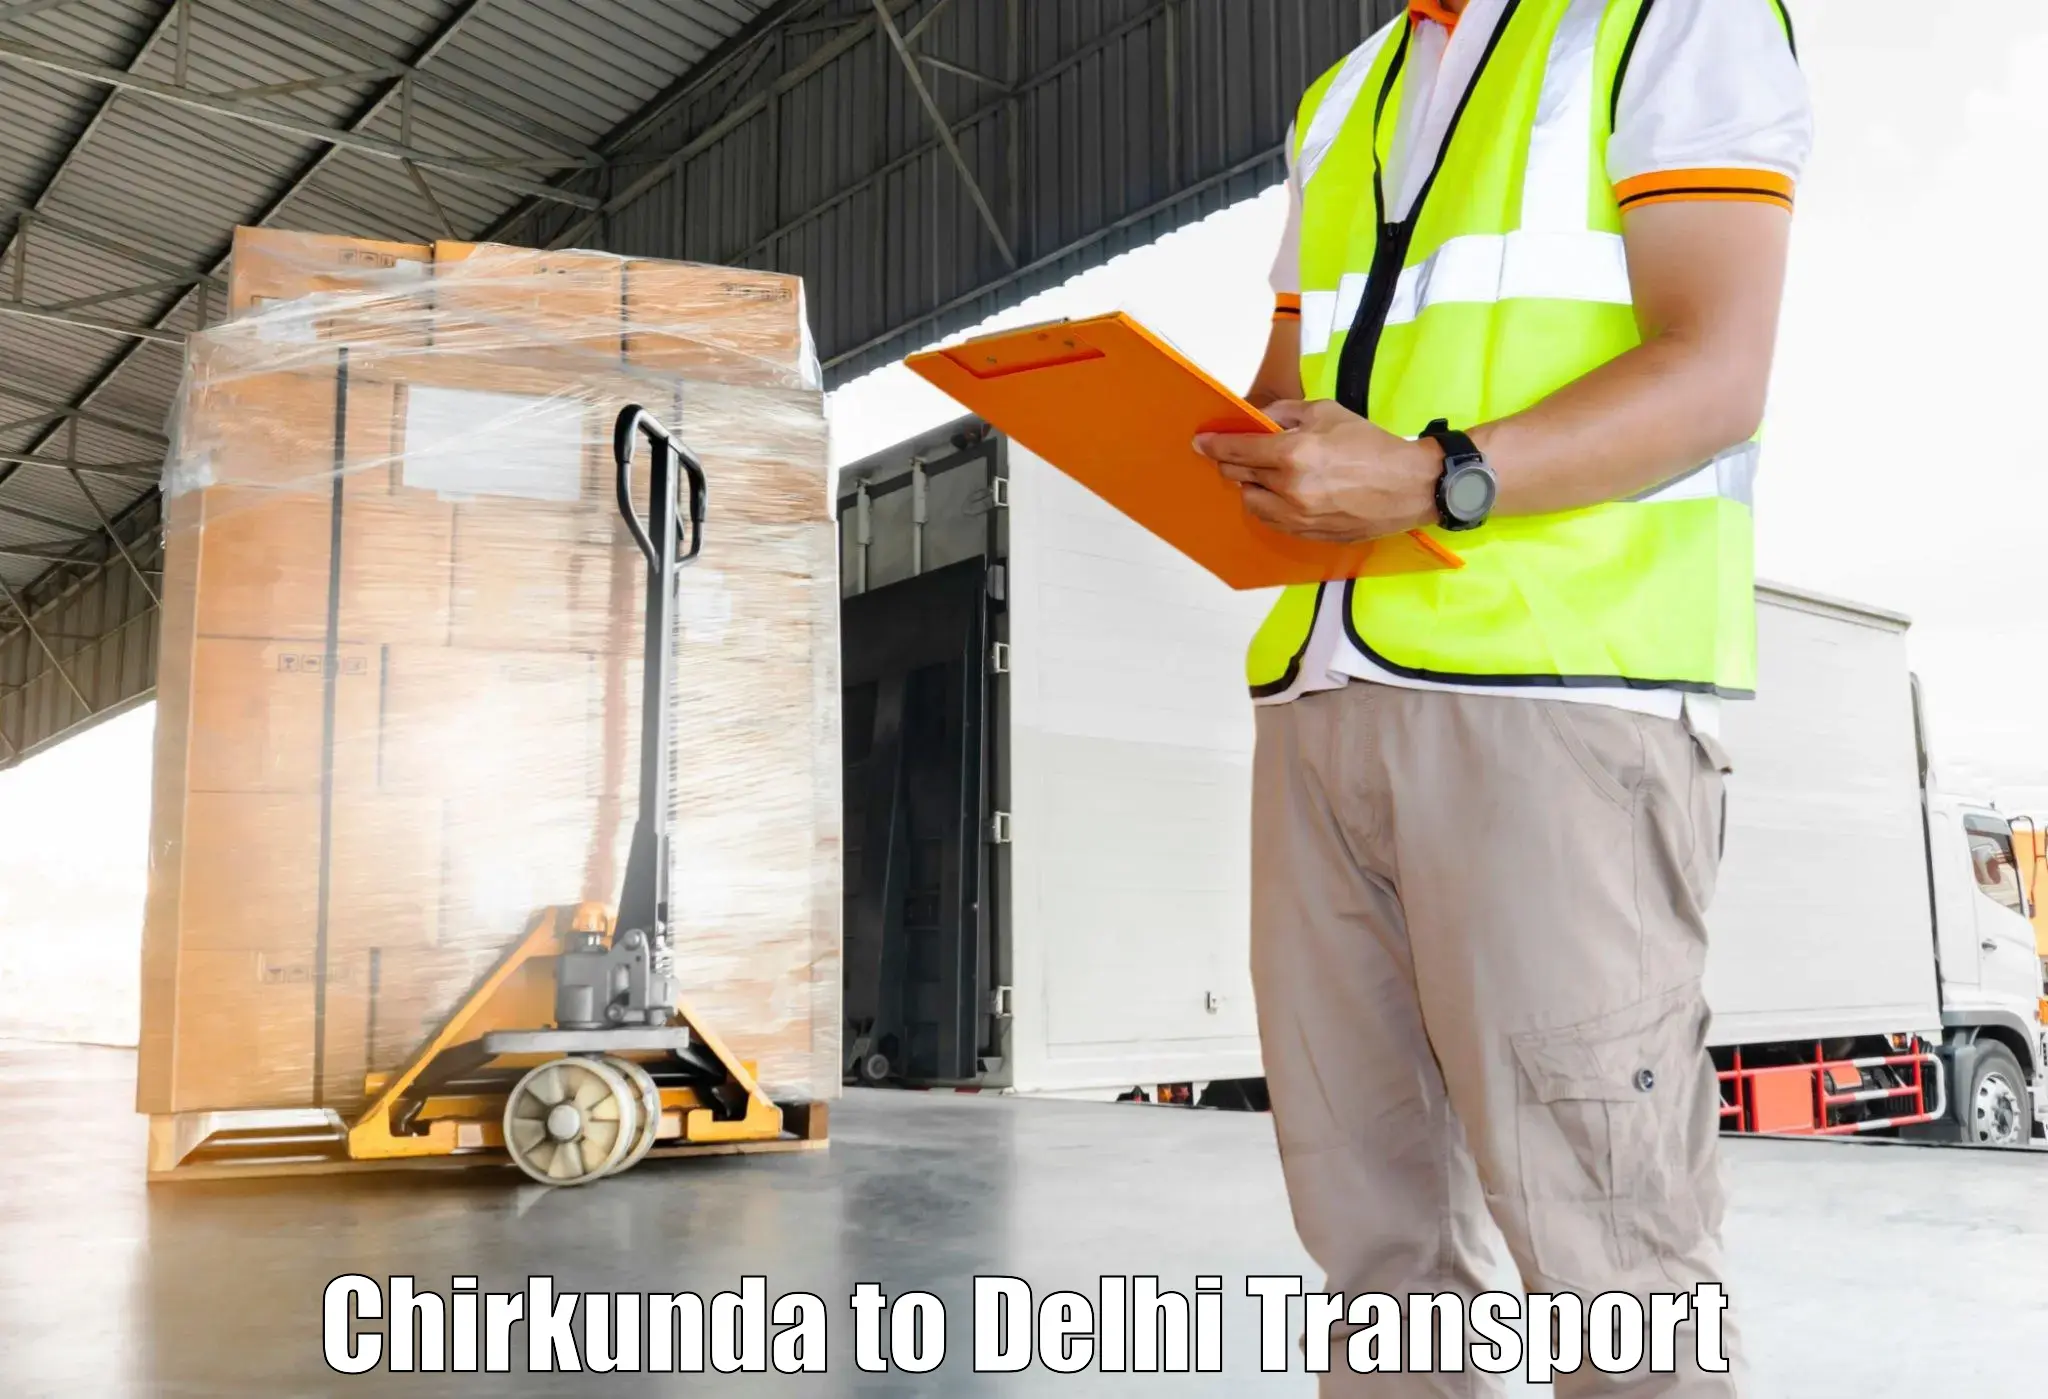 Transport shared services in Chirkunda to Kalkaji